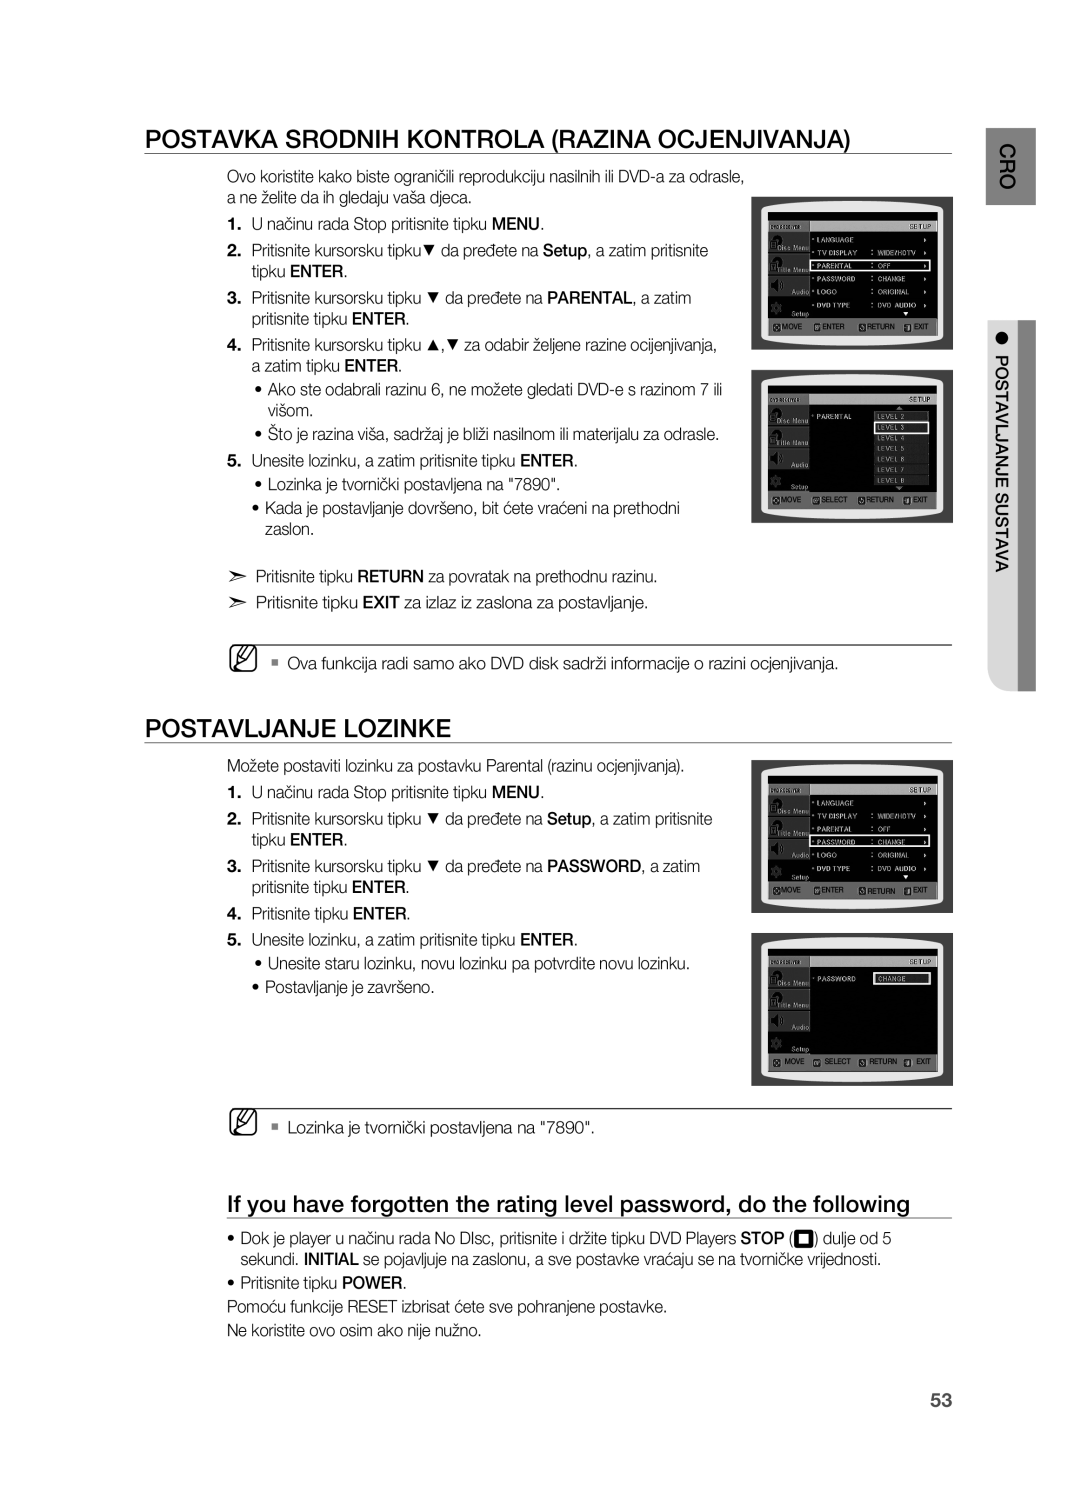 Samsung HT-TZ215R/EDC, HT-TZ212R/EDC, HT-Z310R/EDC manual Postavka srodnih kontrola Razina ocjenjivanja, Postavljanje lozinke 